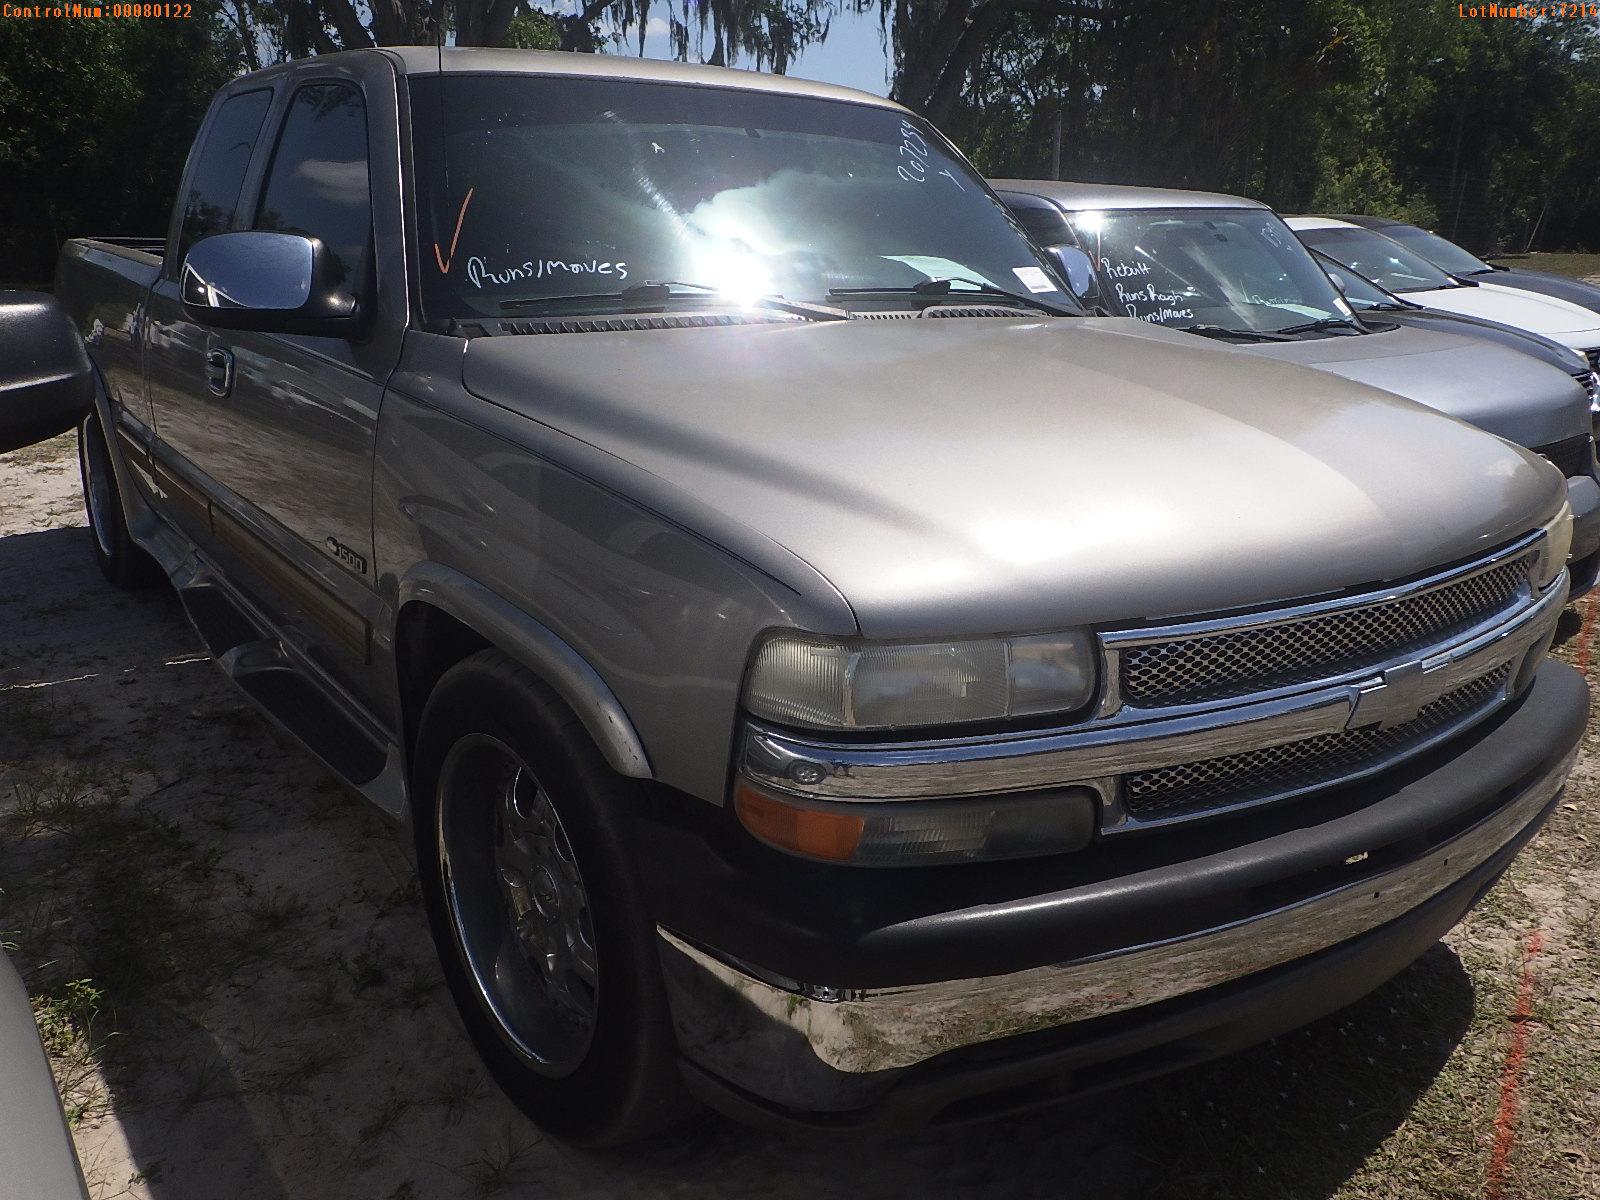 5-07214 (Trucks-Pickup 4D)  Seller:Private/Dealer 2002 CHEV SILVERADO